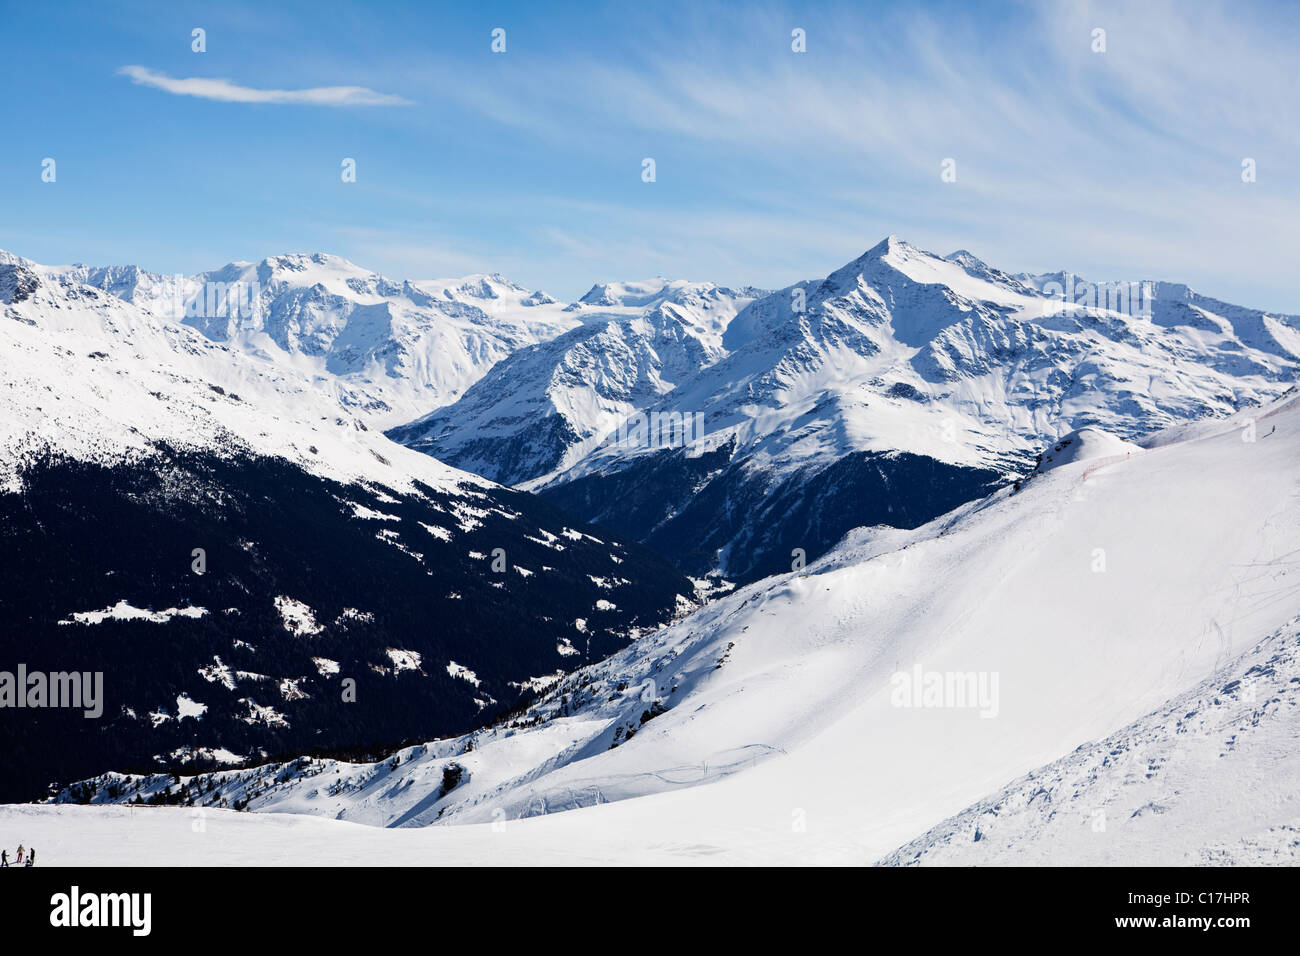 Valtellina Alps, Italy Stock Photo